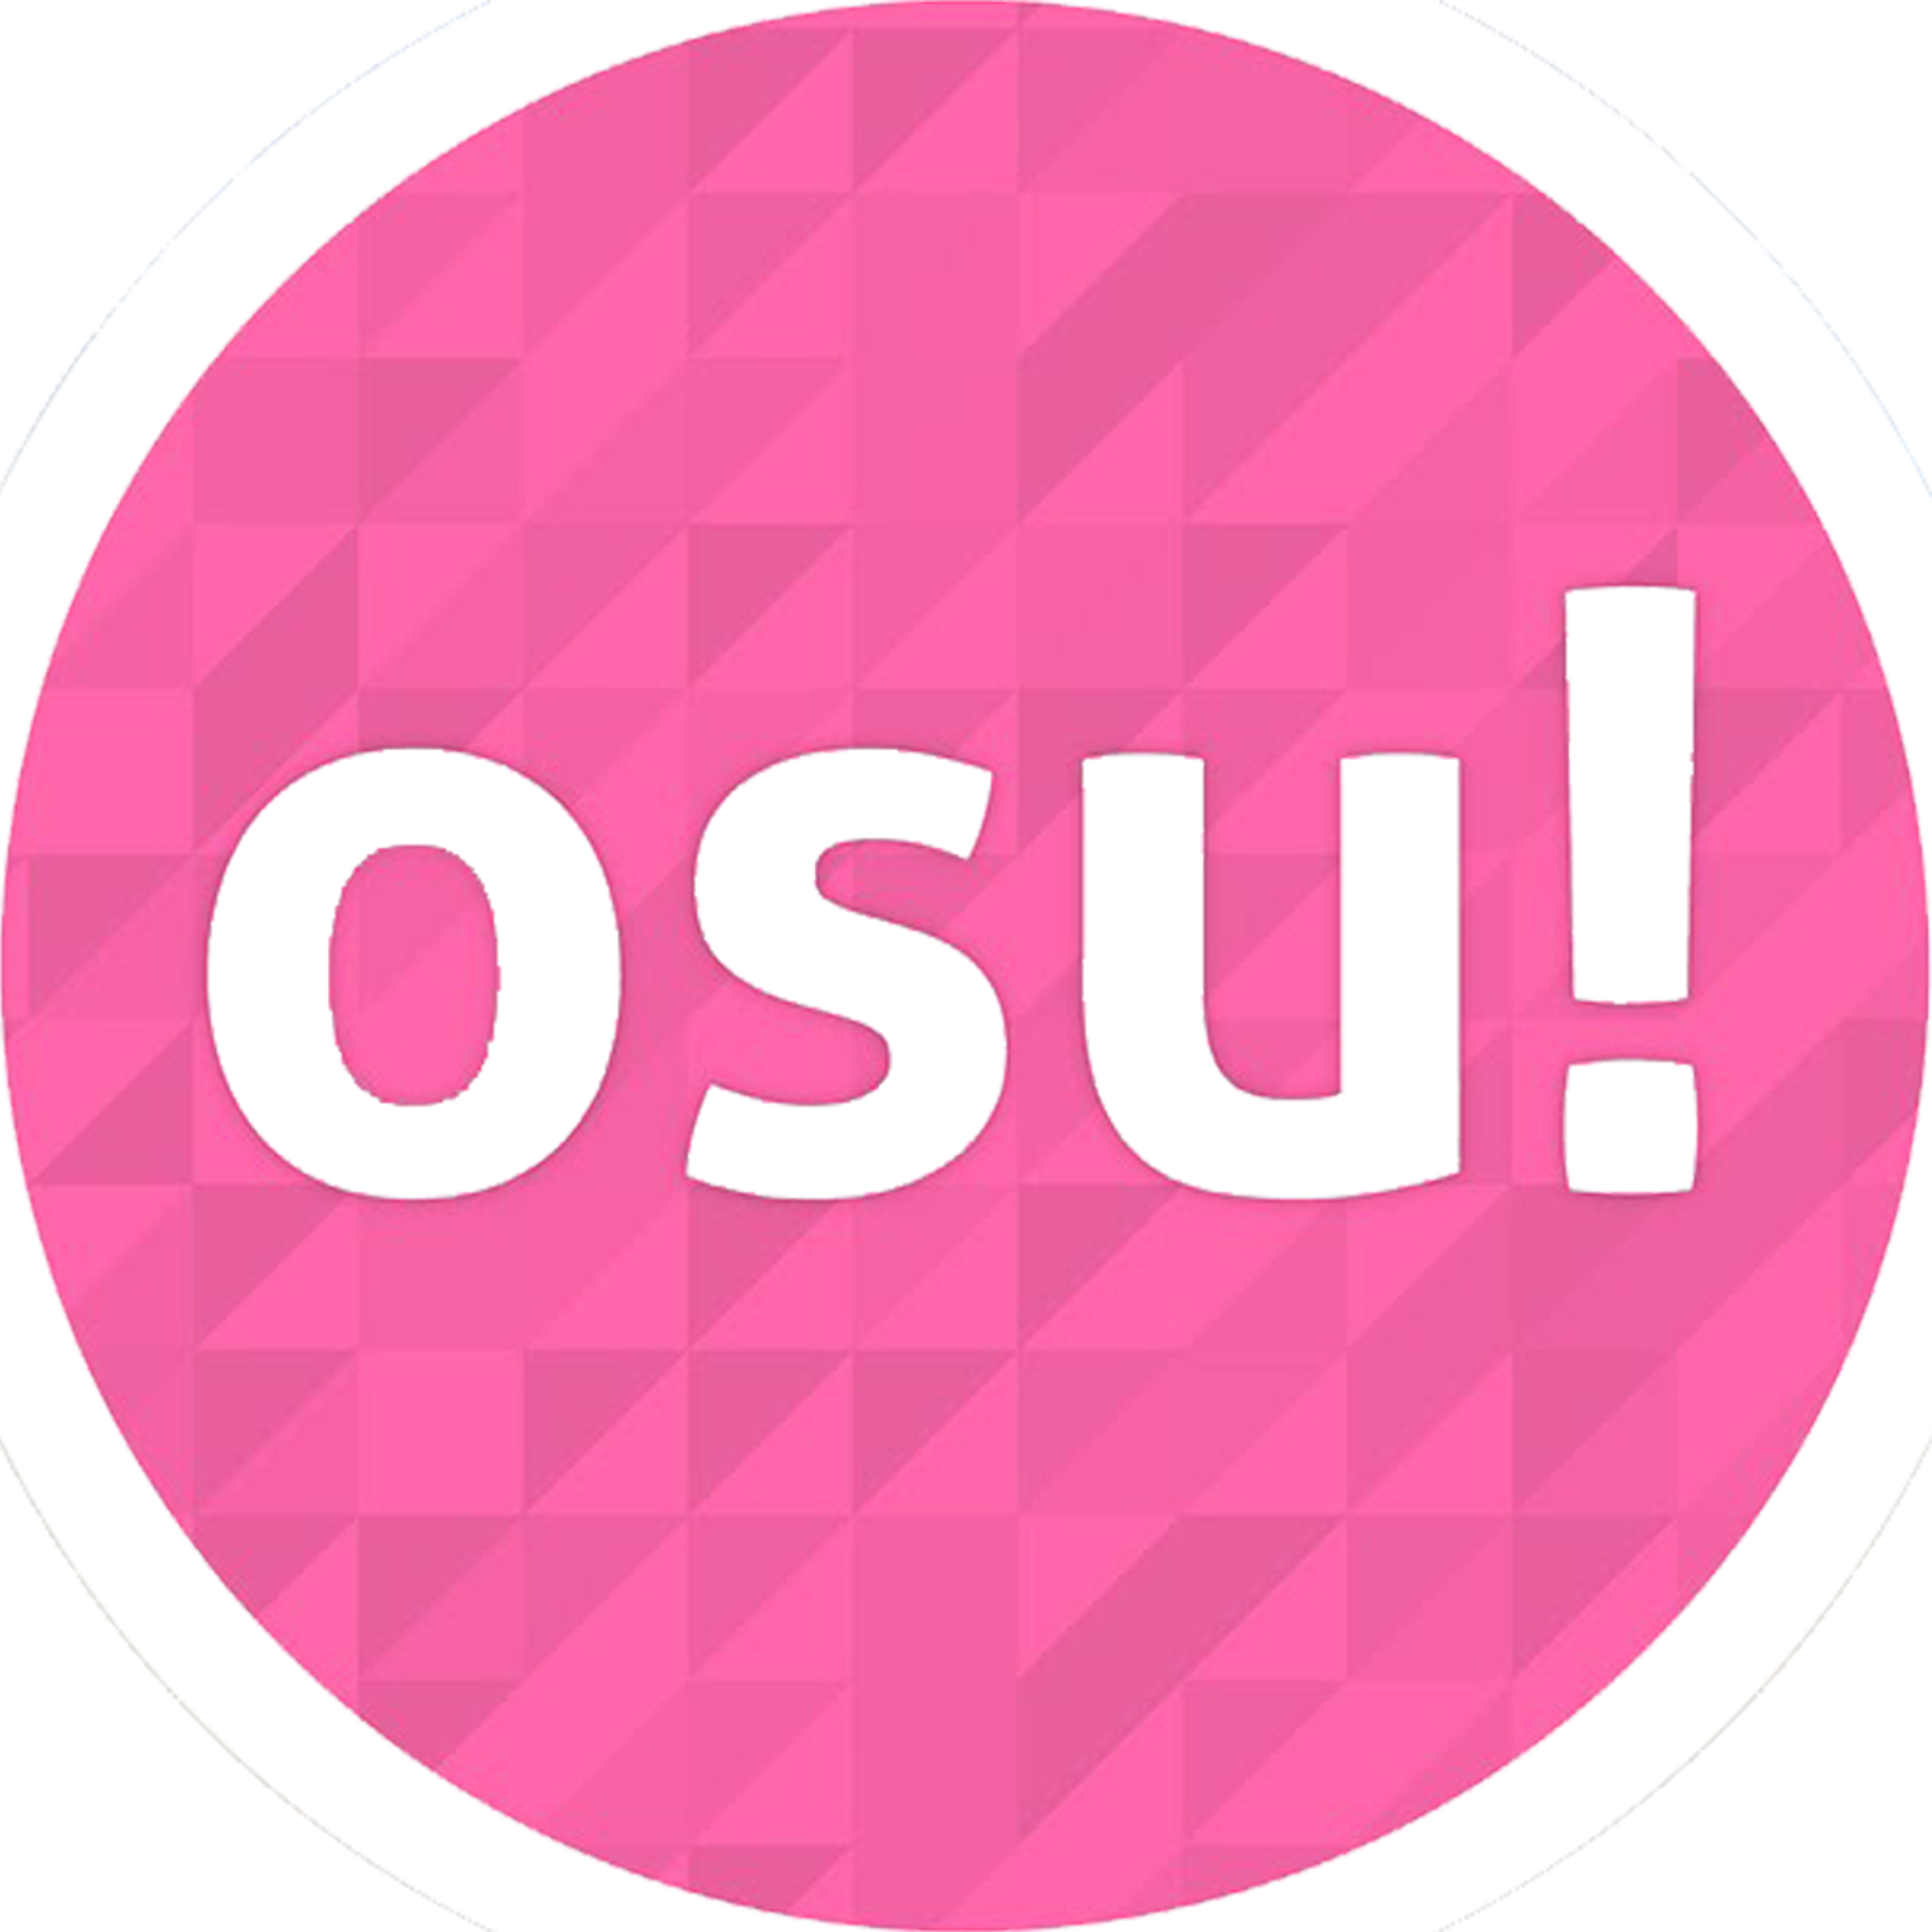 Where Do I Browse OSU Skins?